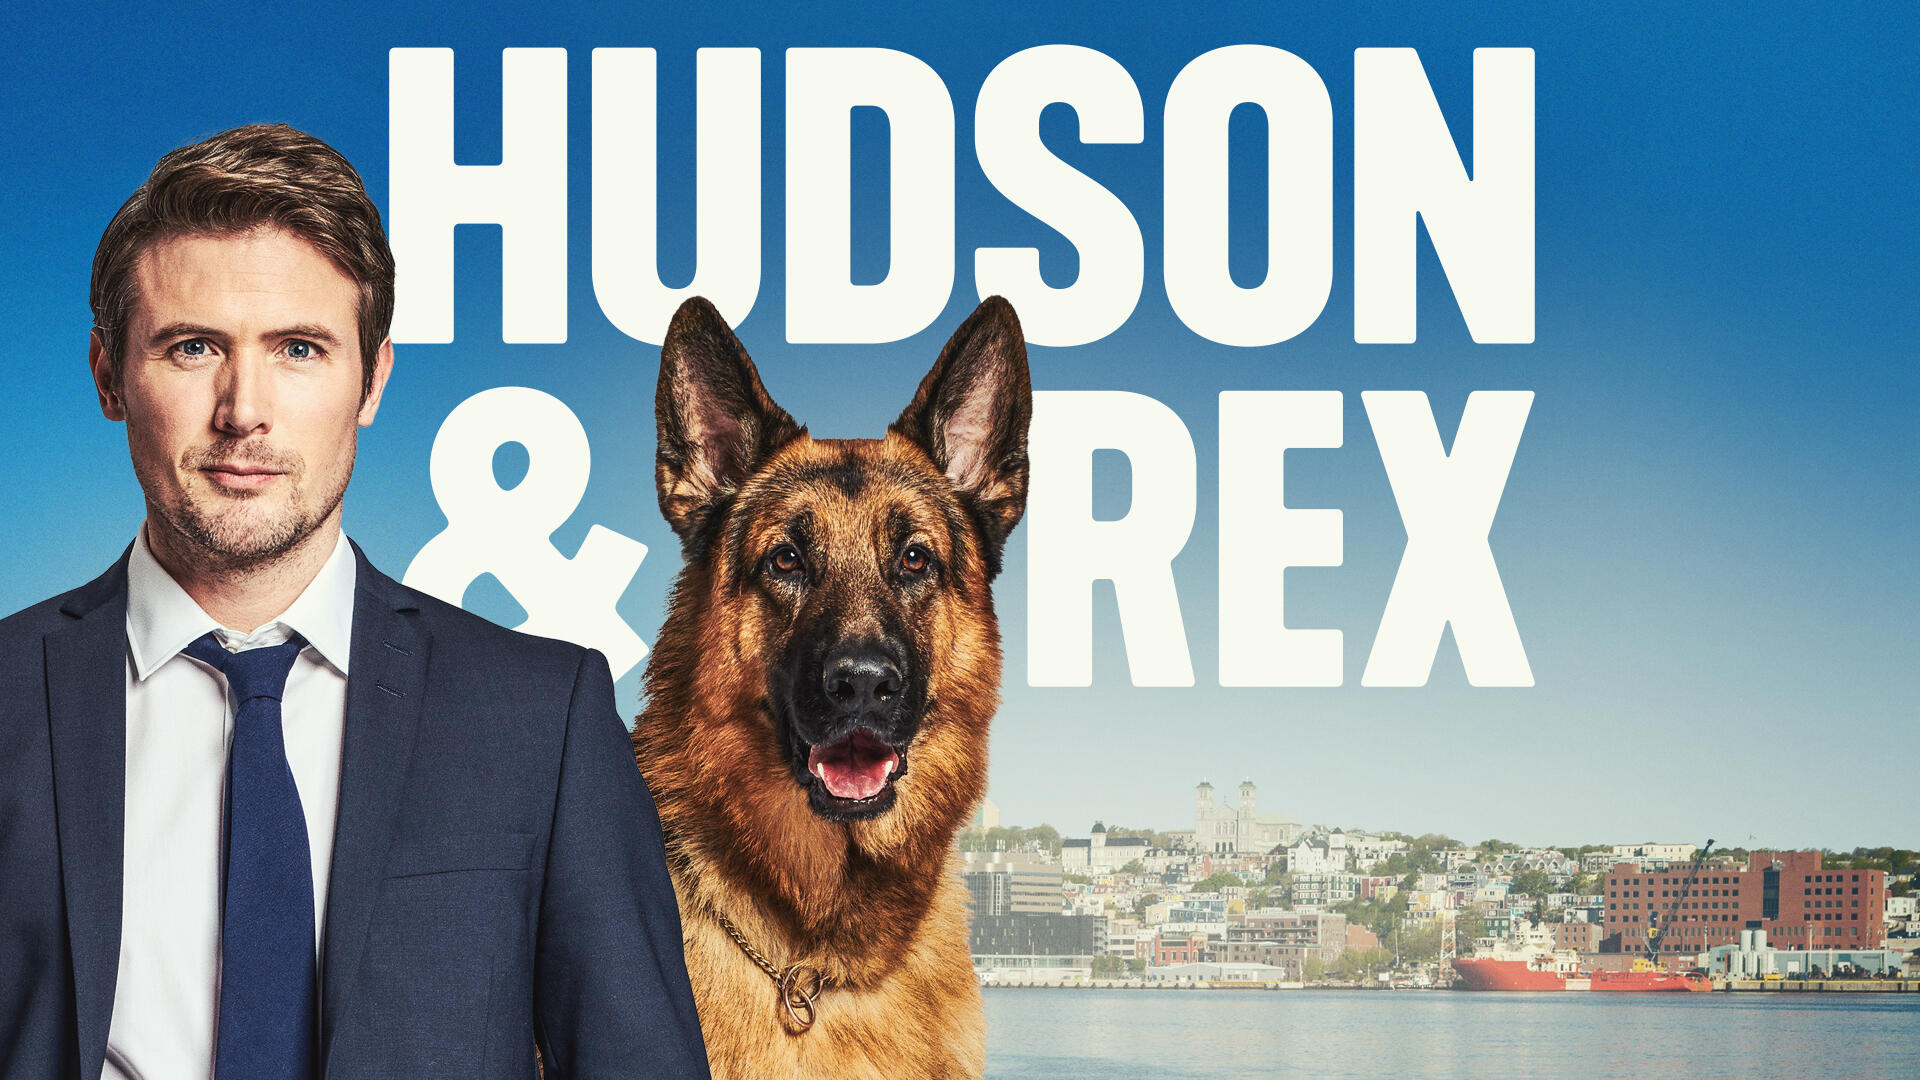 Hudson o Rex